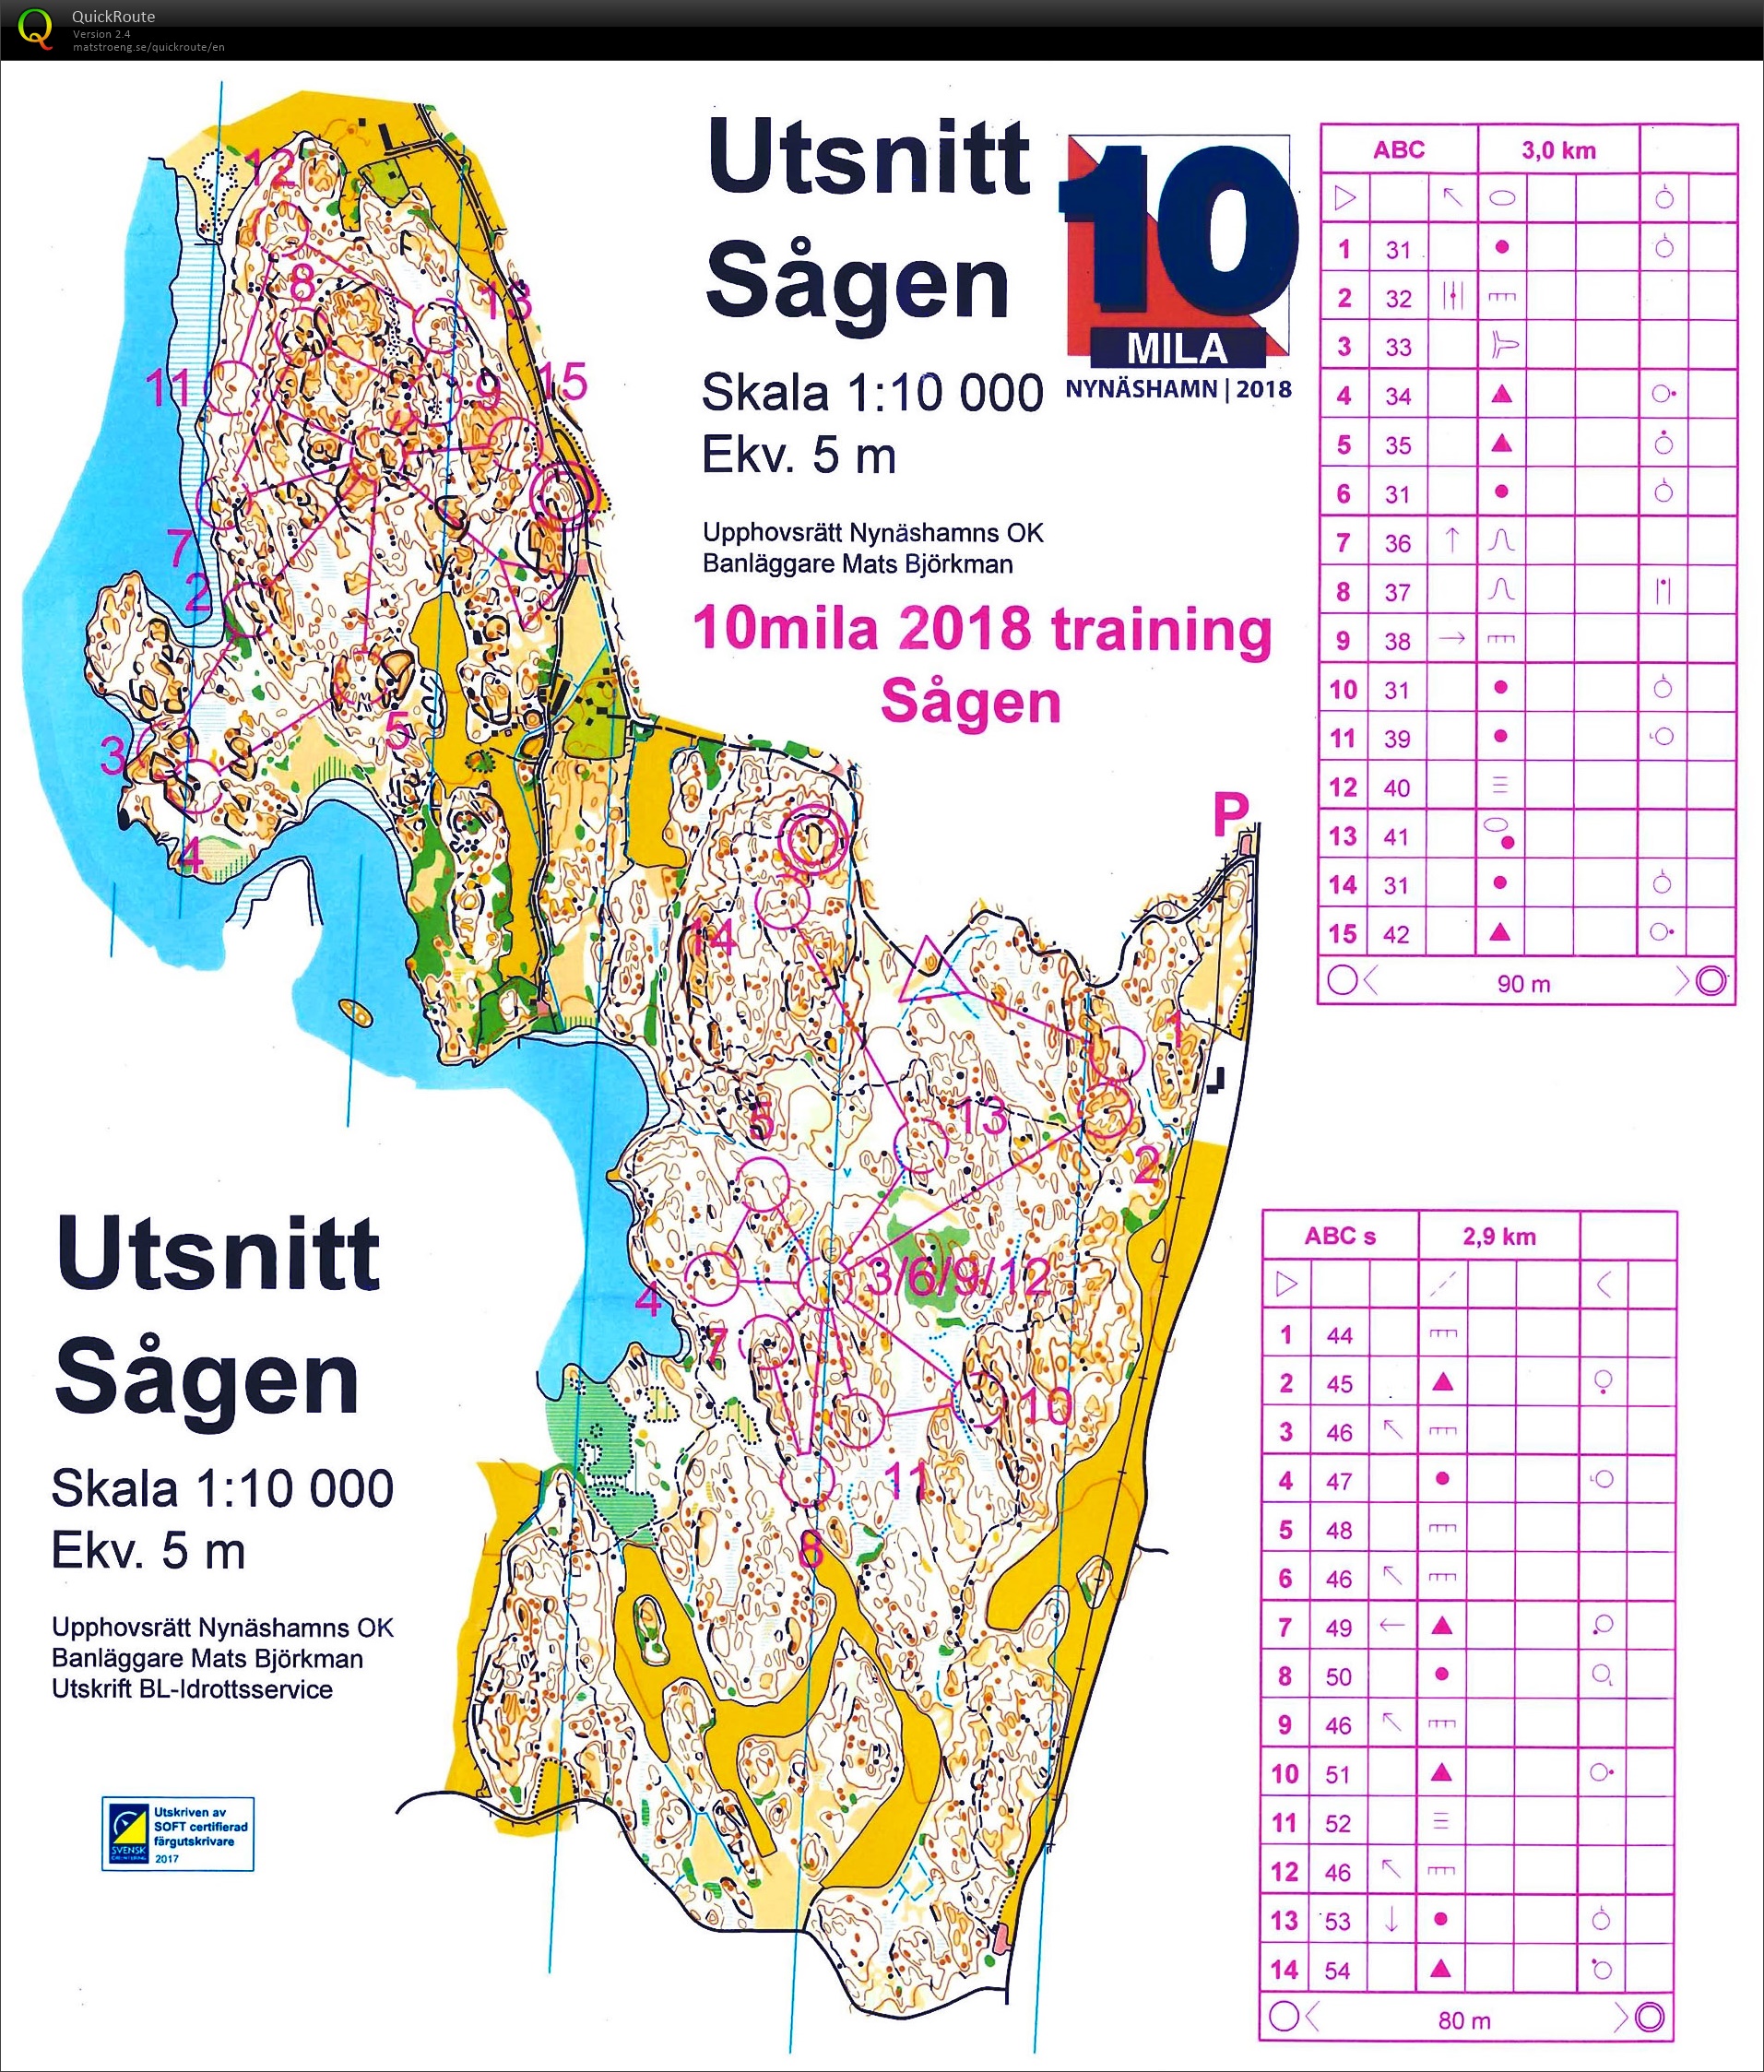 10mila training2 : Sågen (27.04.2018)